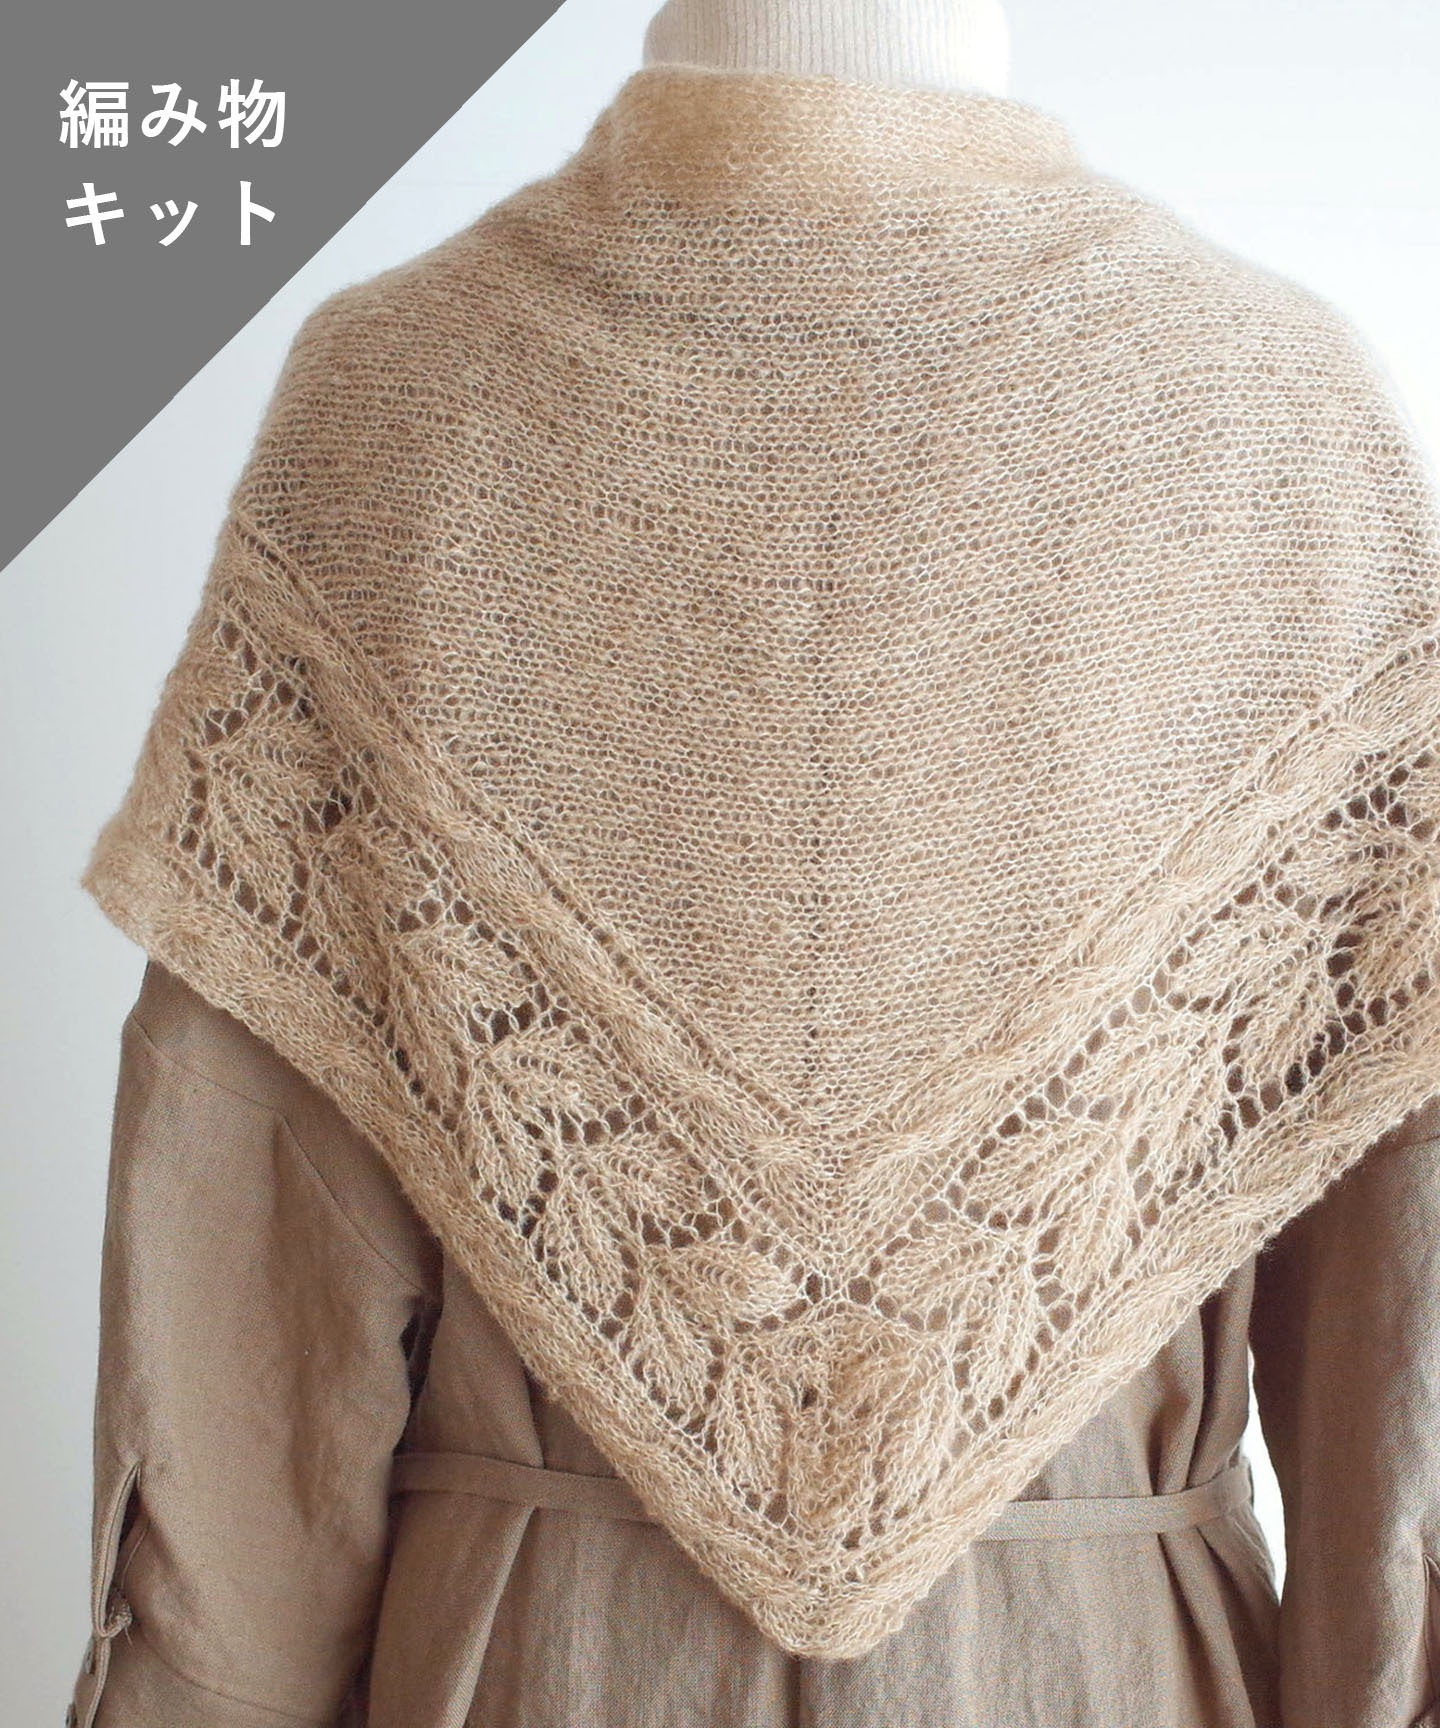 編み物キット リーフ模様の三角ショール 糸 No 11 And Wool